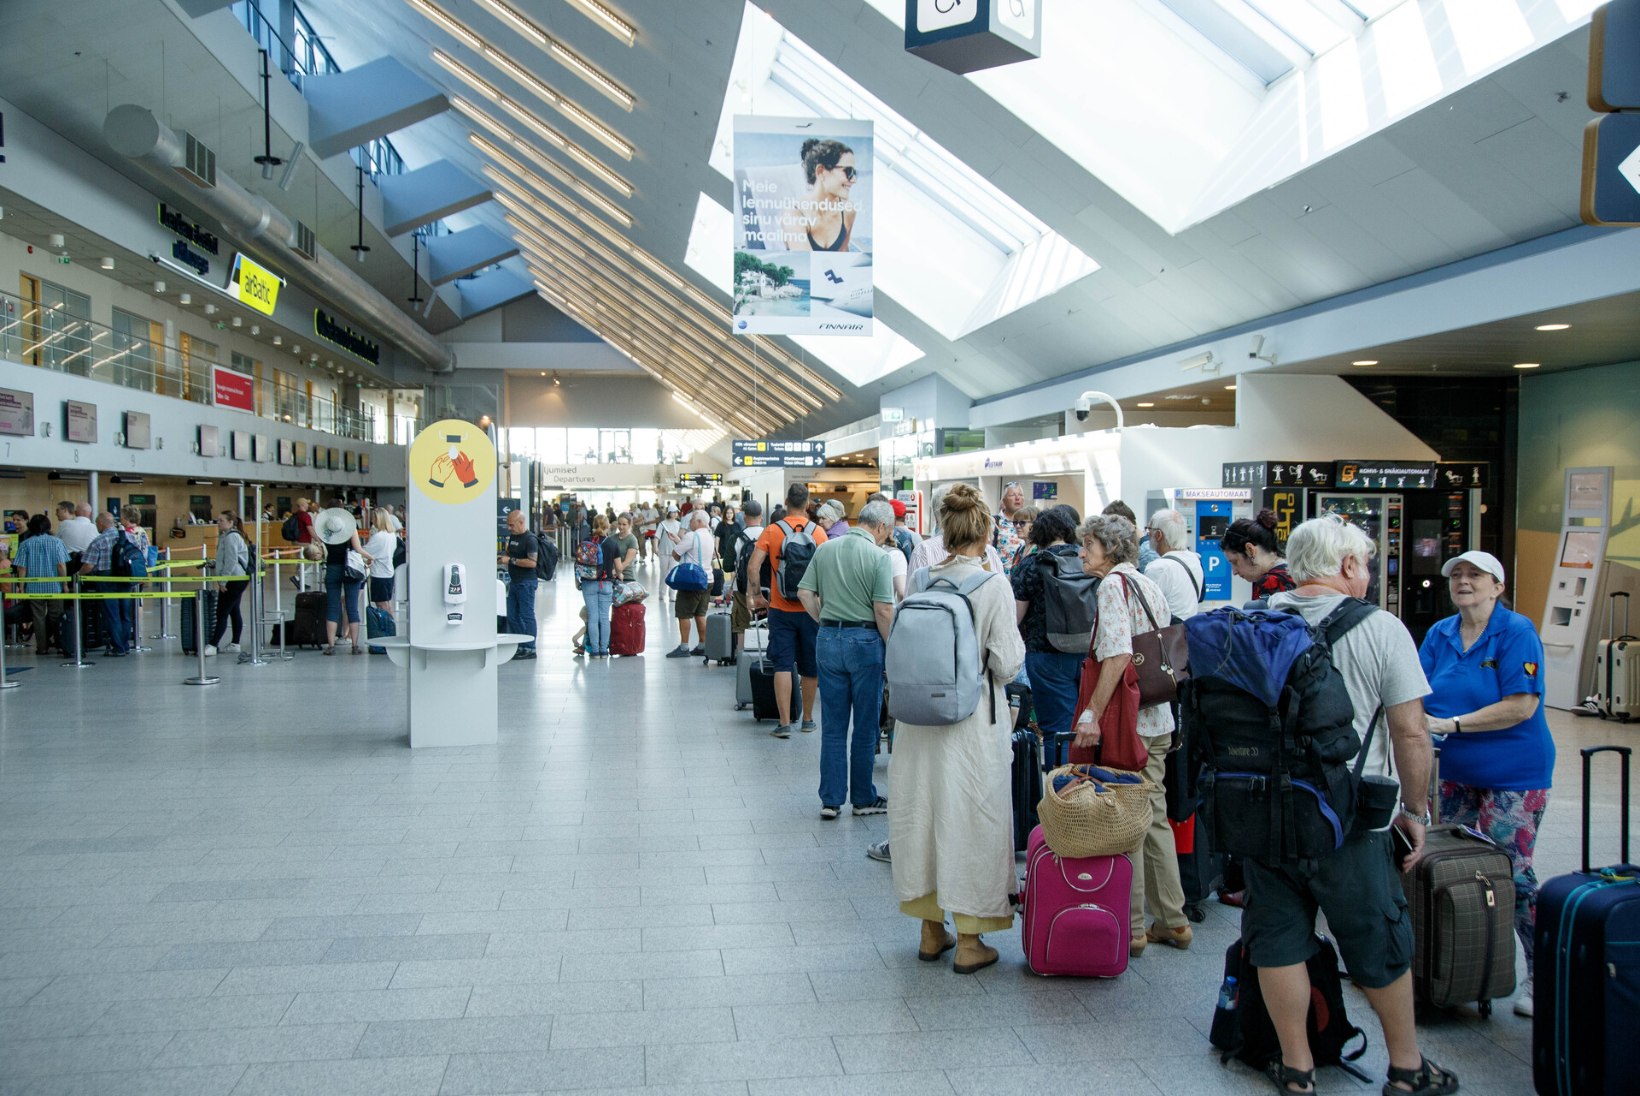 Kaootiline olukord Euroopa lennujaamades jätkub: kuidas päästa oma puhkus ja reisirahad?